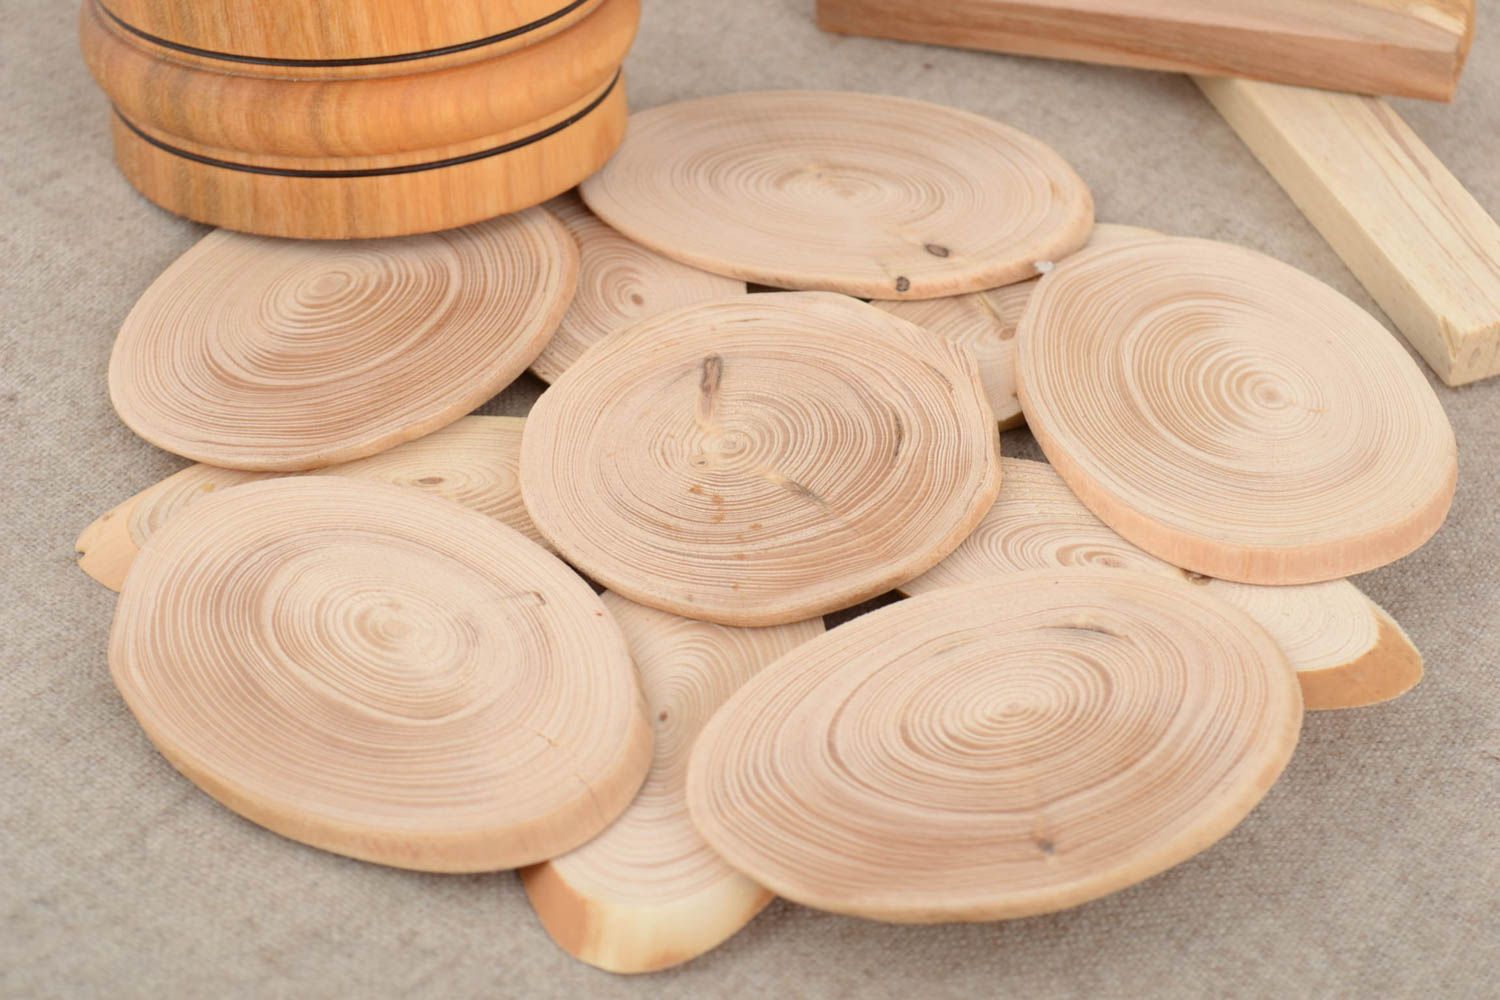 Handmade Untersetzer aus Holz für Heißes nicht groß hell in Küche nützlich schön foto 1